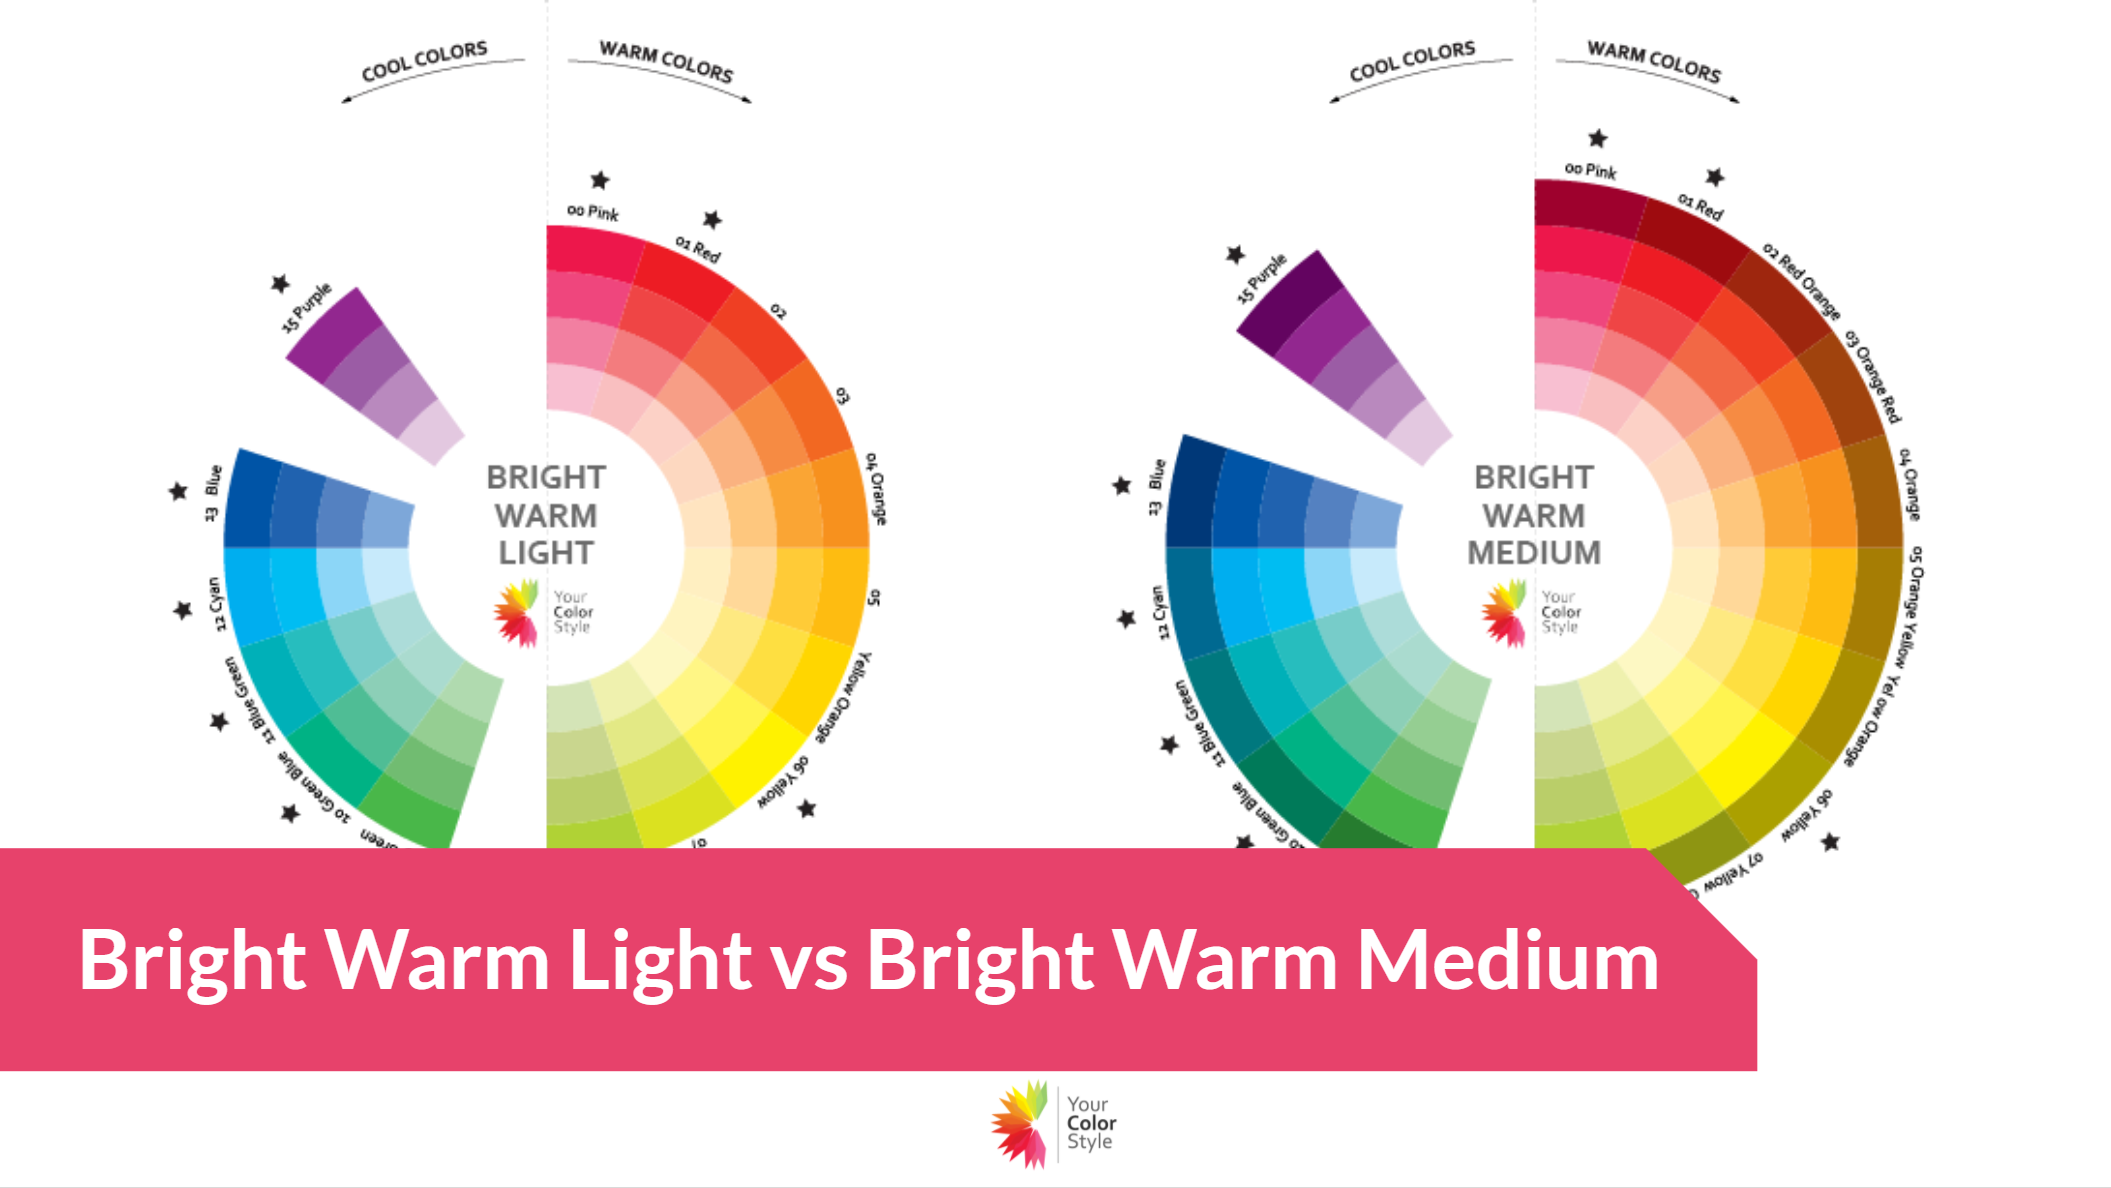 Bright Warm Light vs Bright Warm Medium